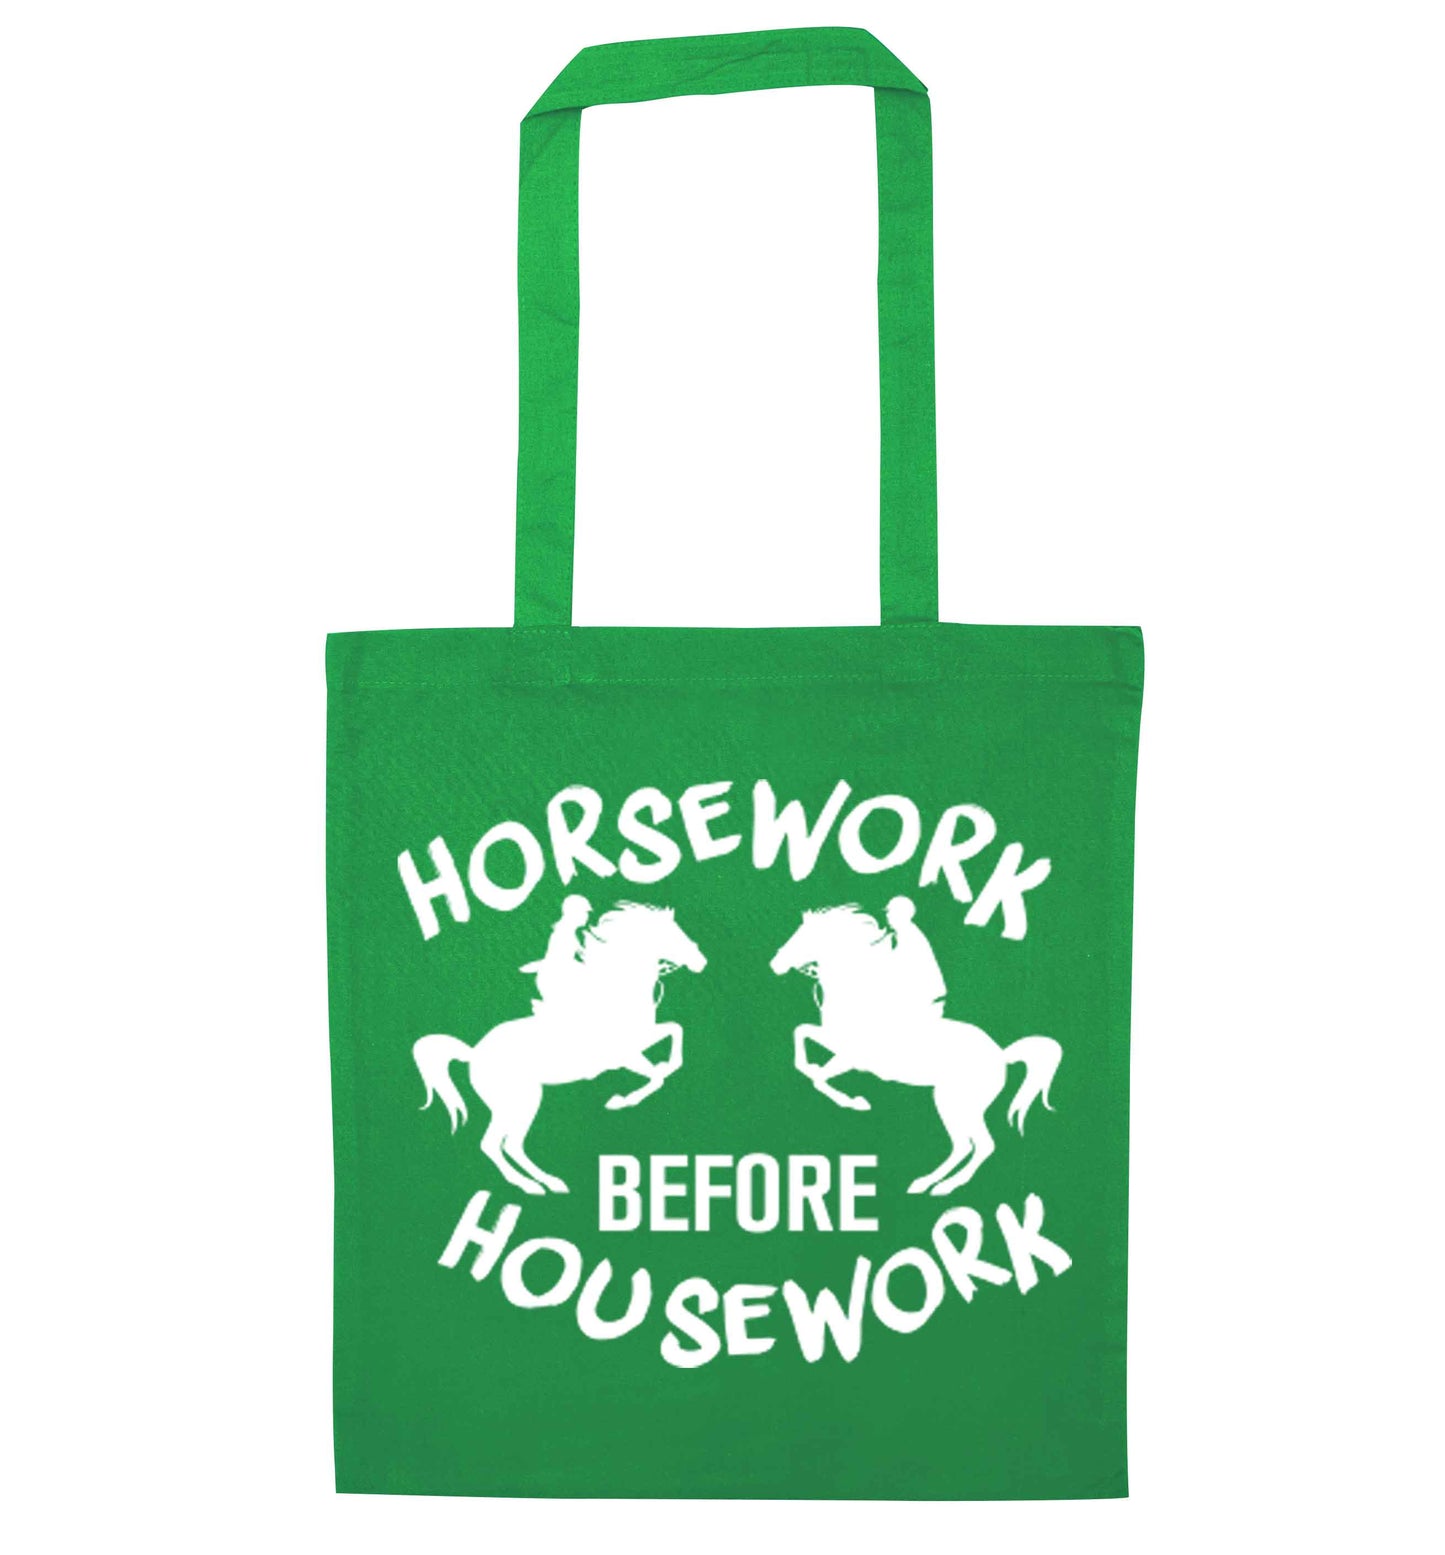 Horsework before housework green tote bag